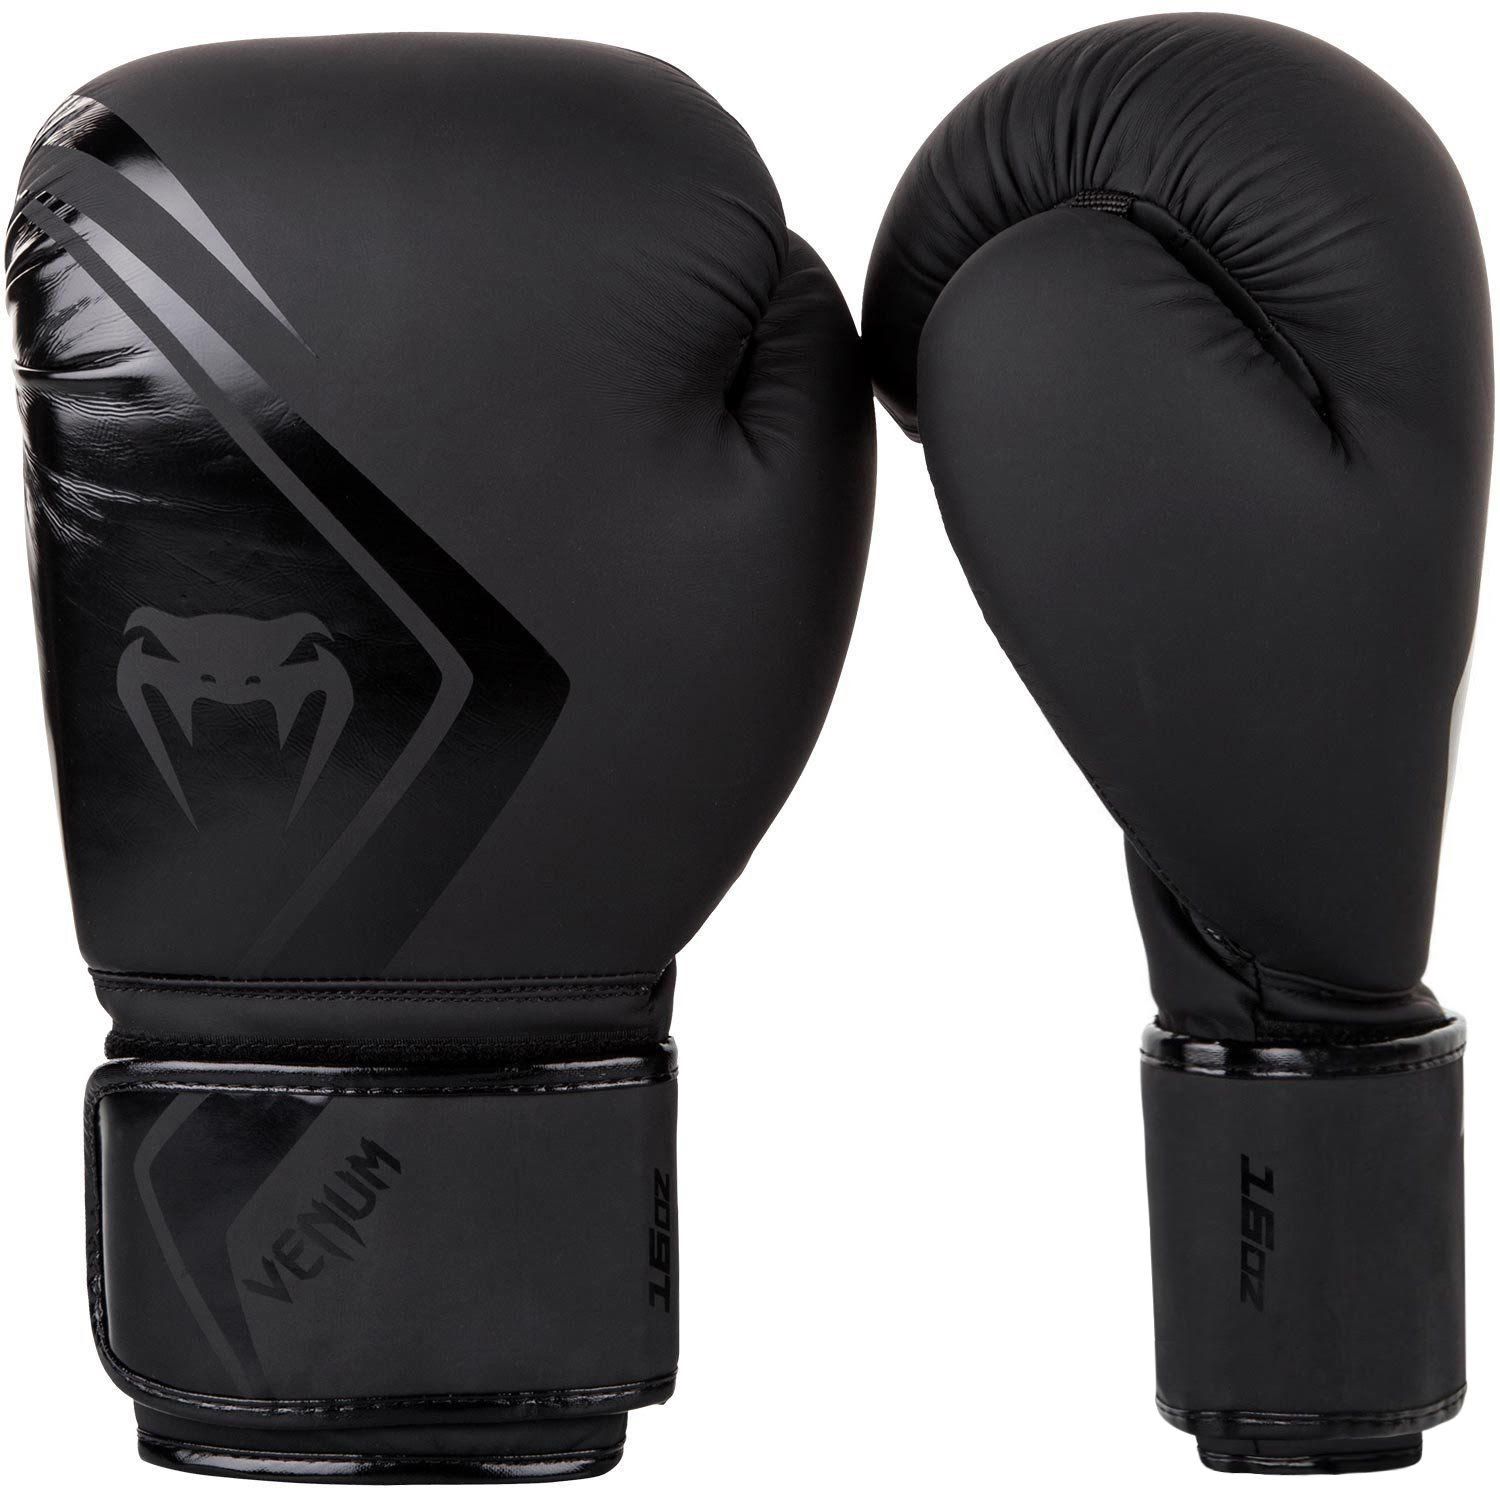 Venum Contender 2.0 Boxing Gloves - Black - 16 oz - Adult - image 1 of 7